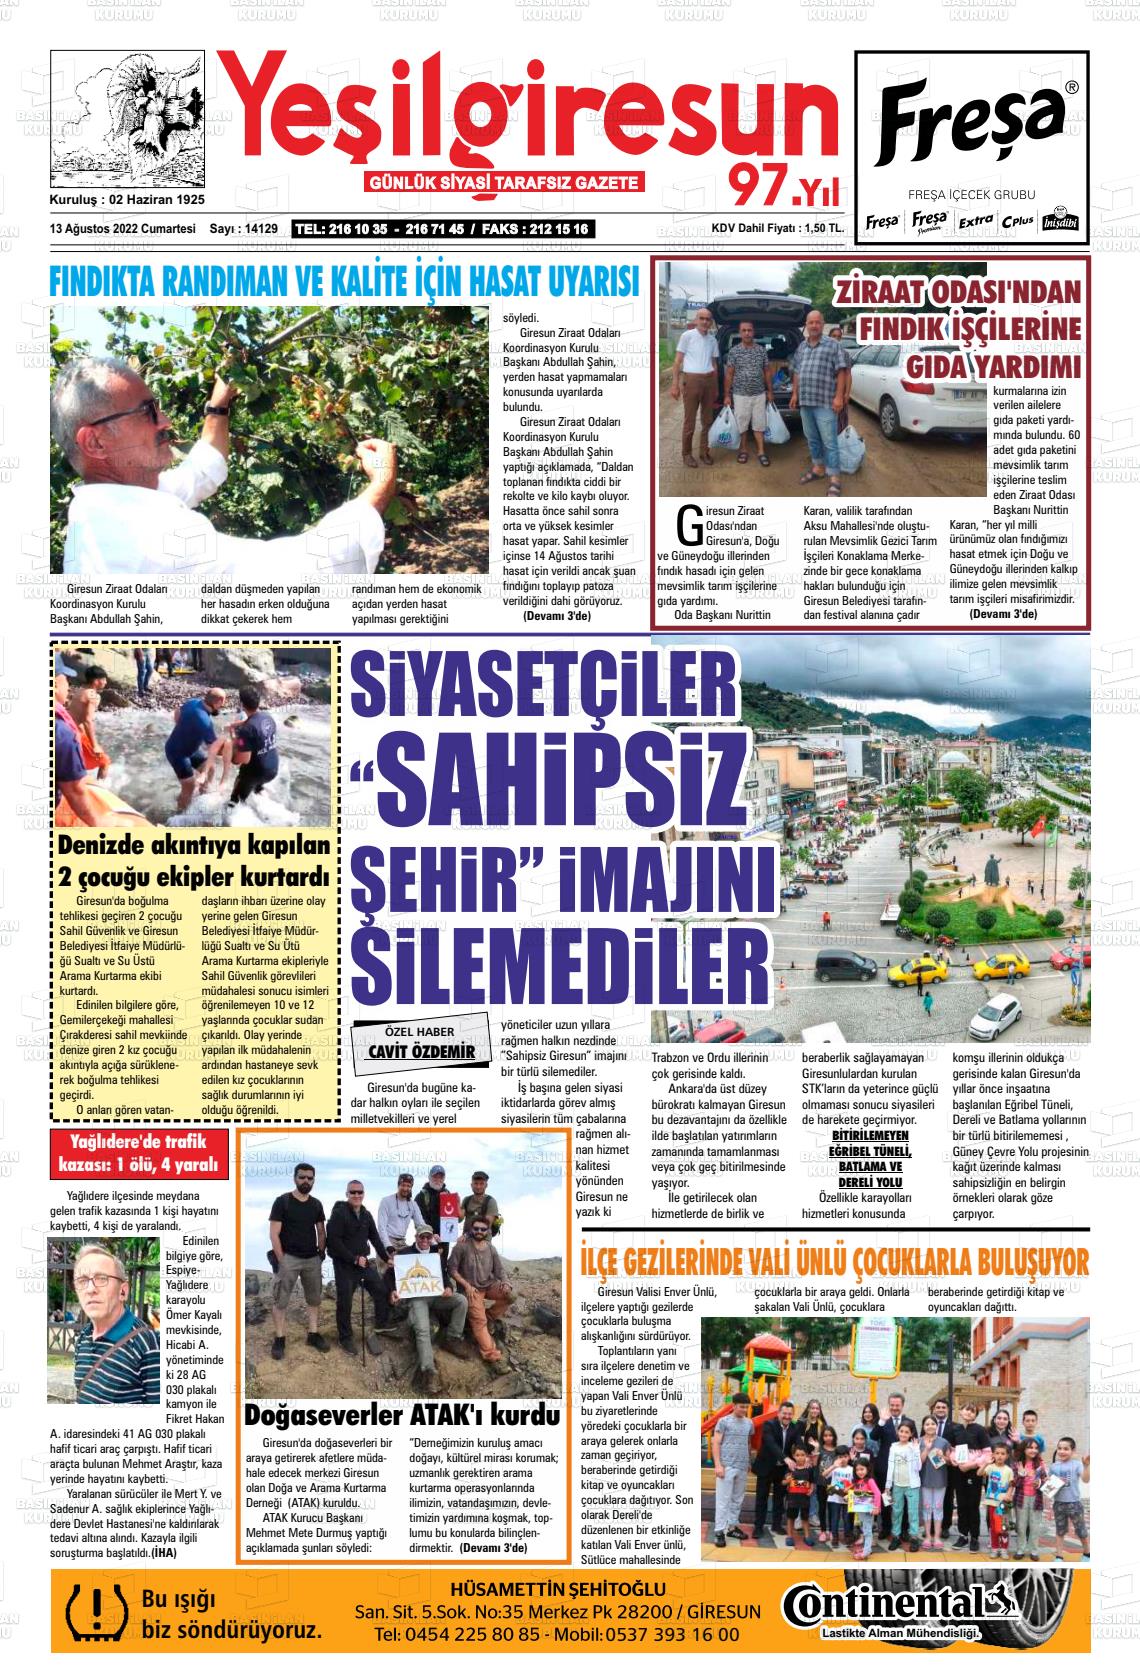 13 Ağustos 2022 Yeşil Giresun Gazete Manşeti